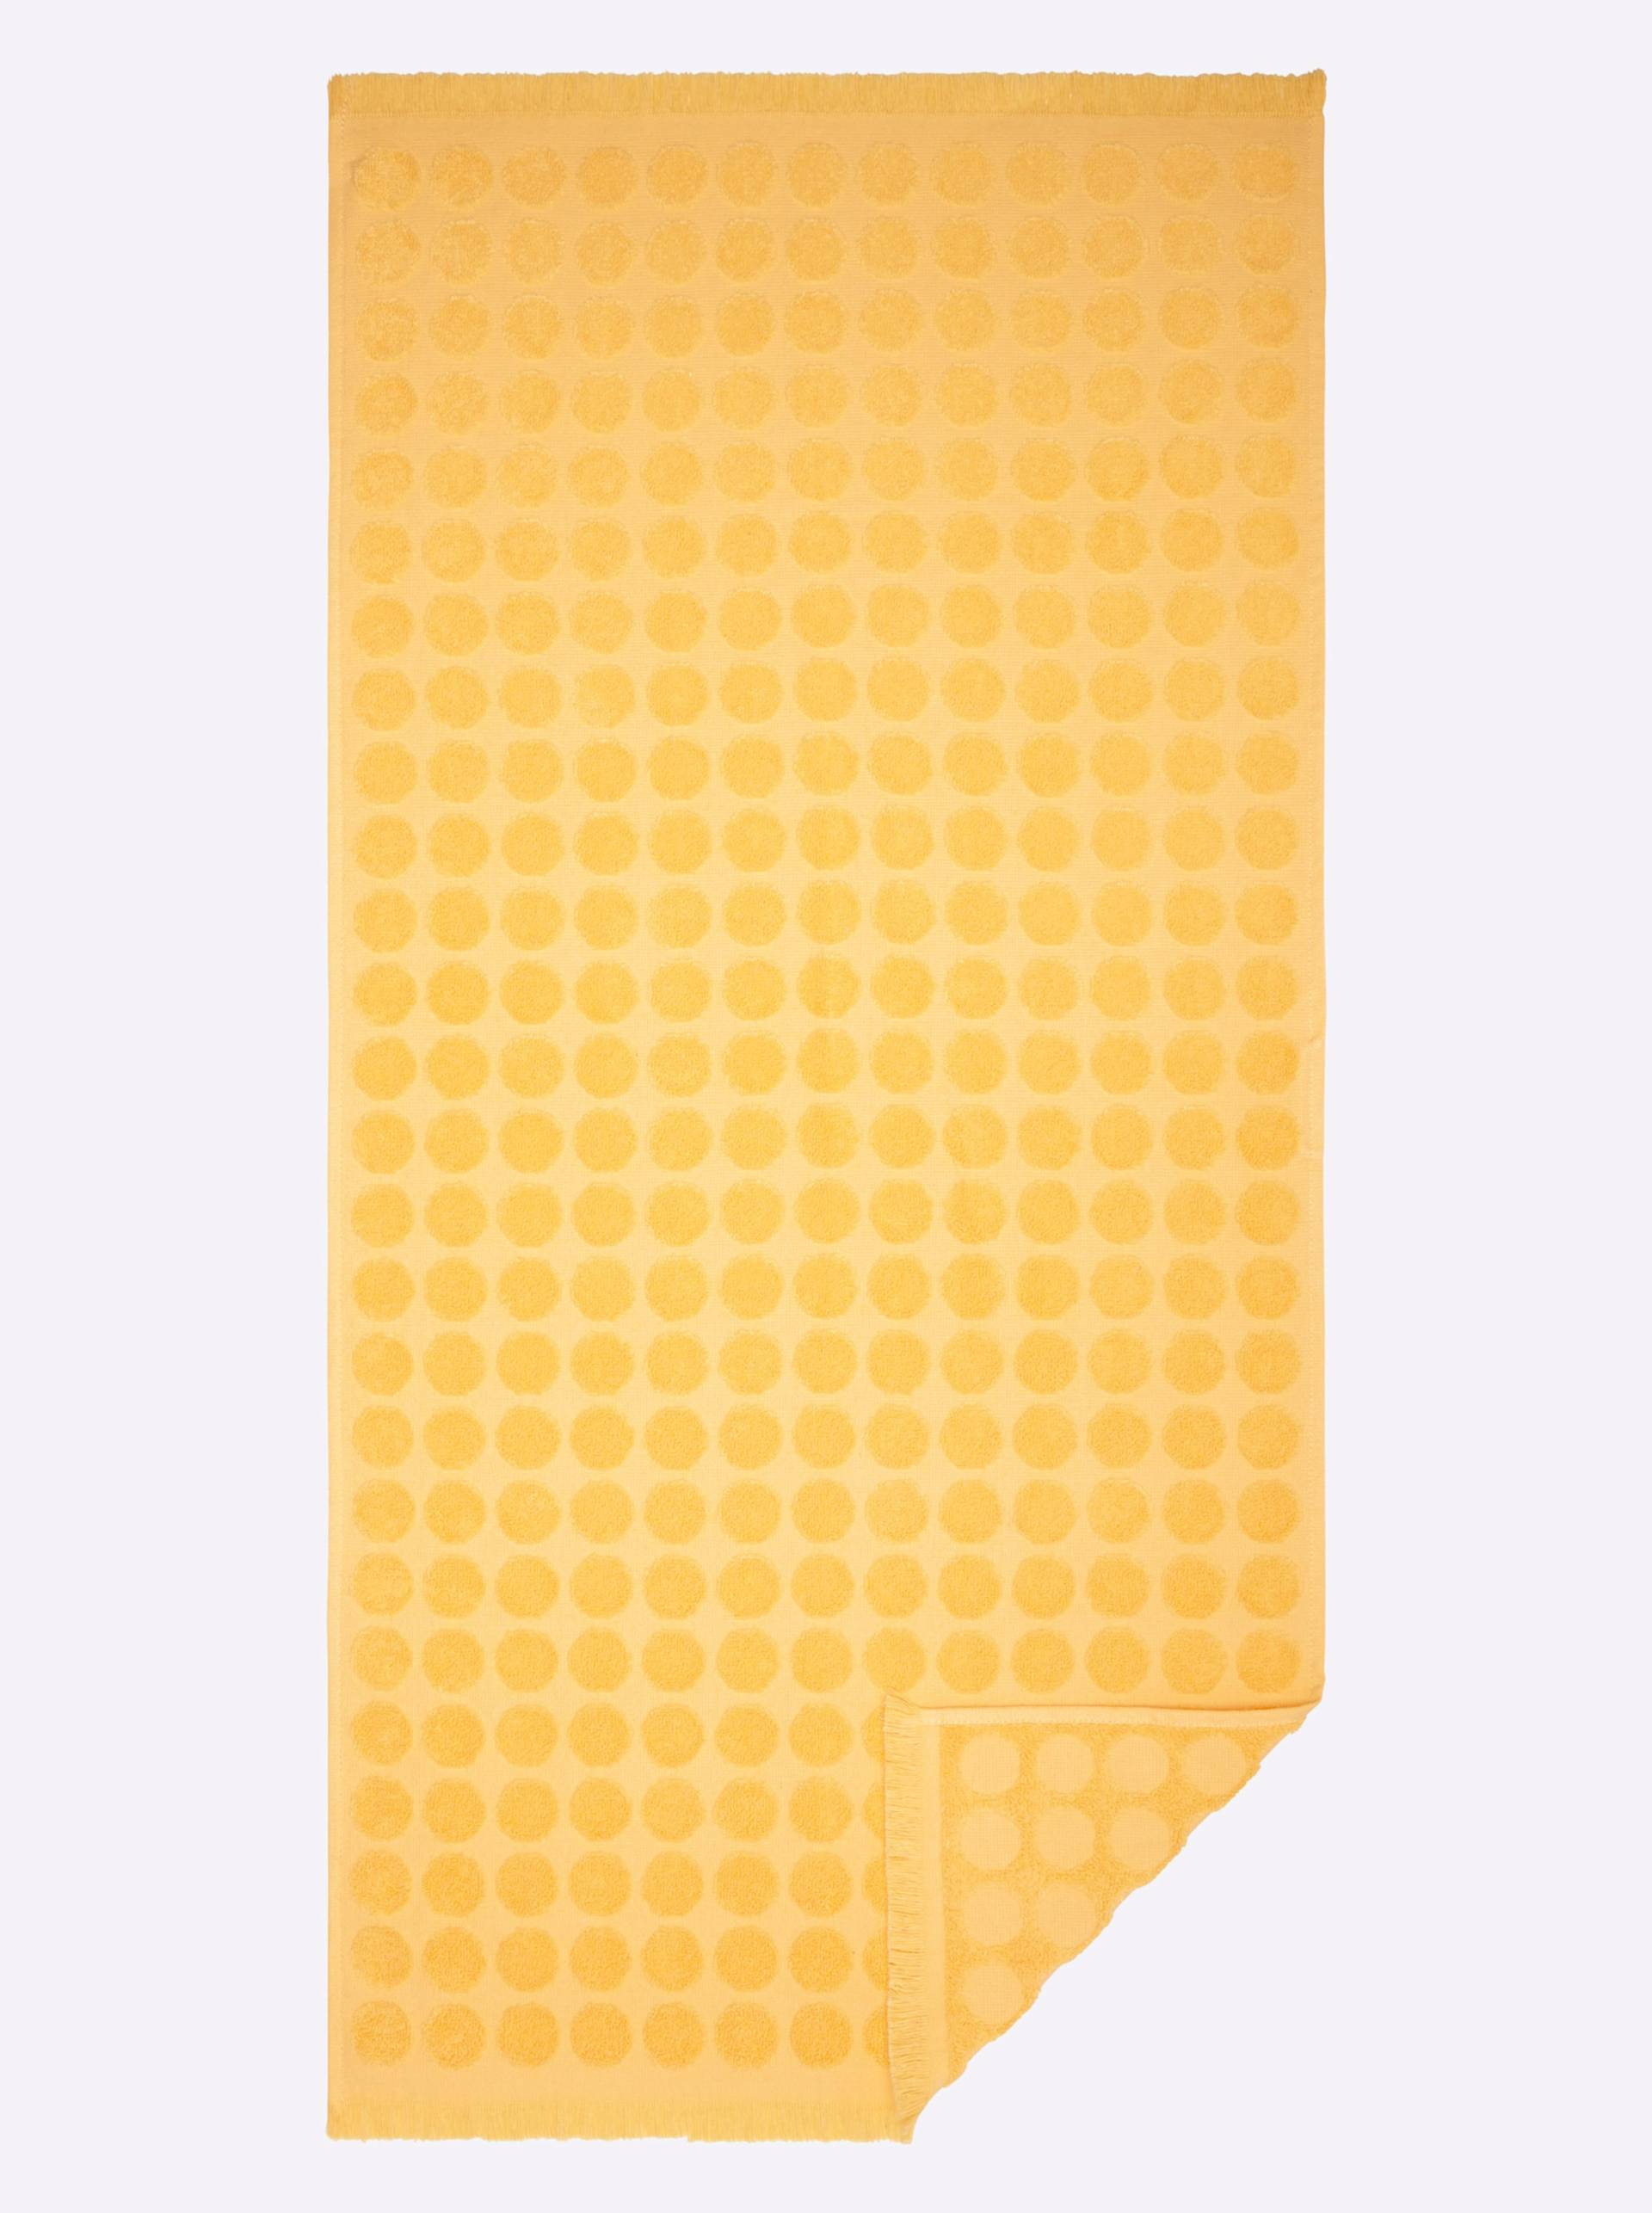 Handtuch in gelb von wäschepur